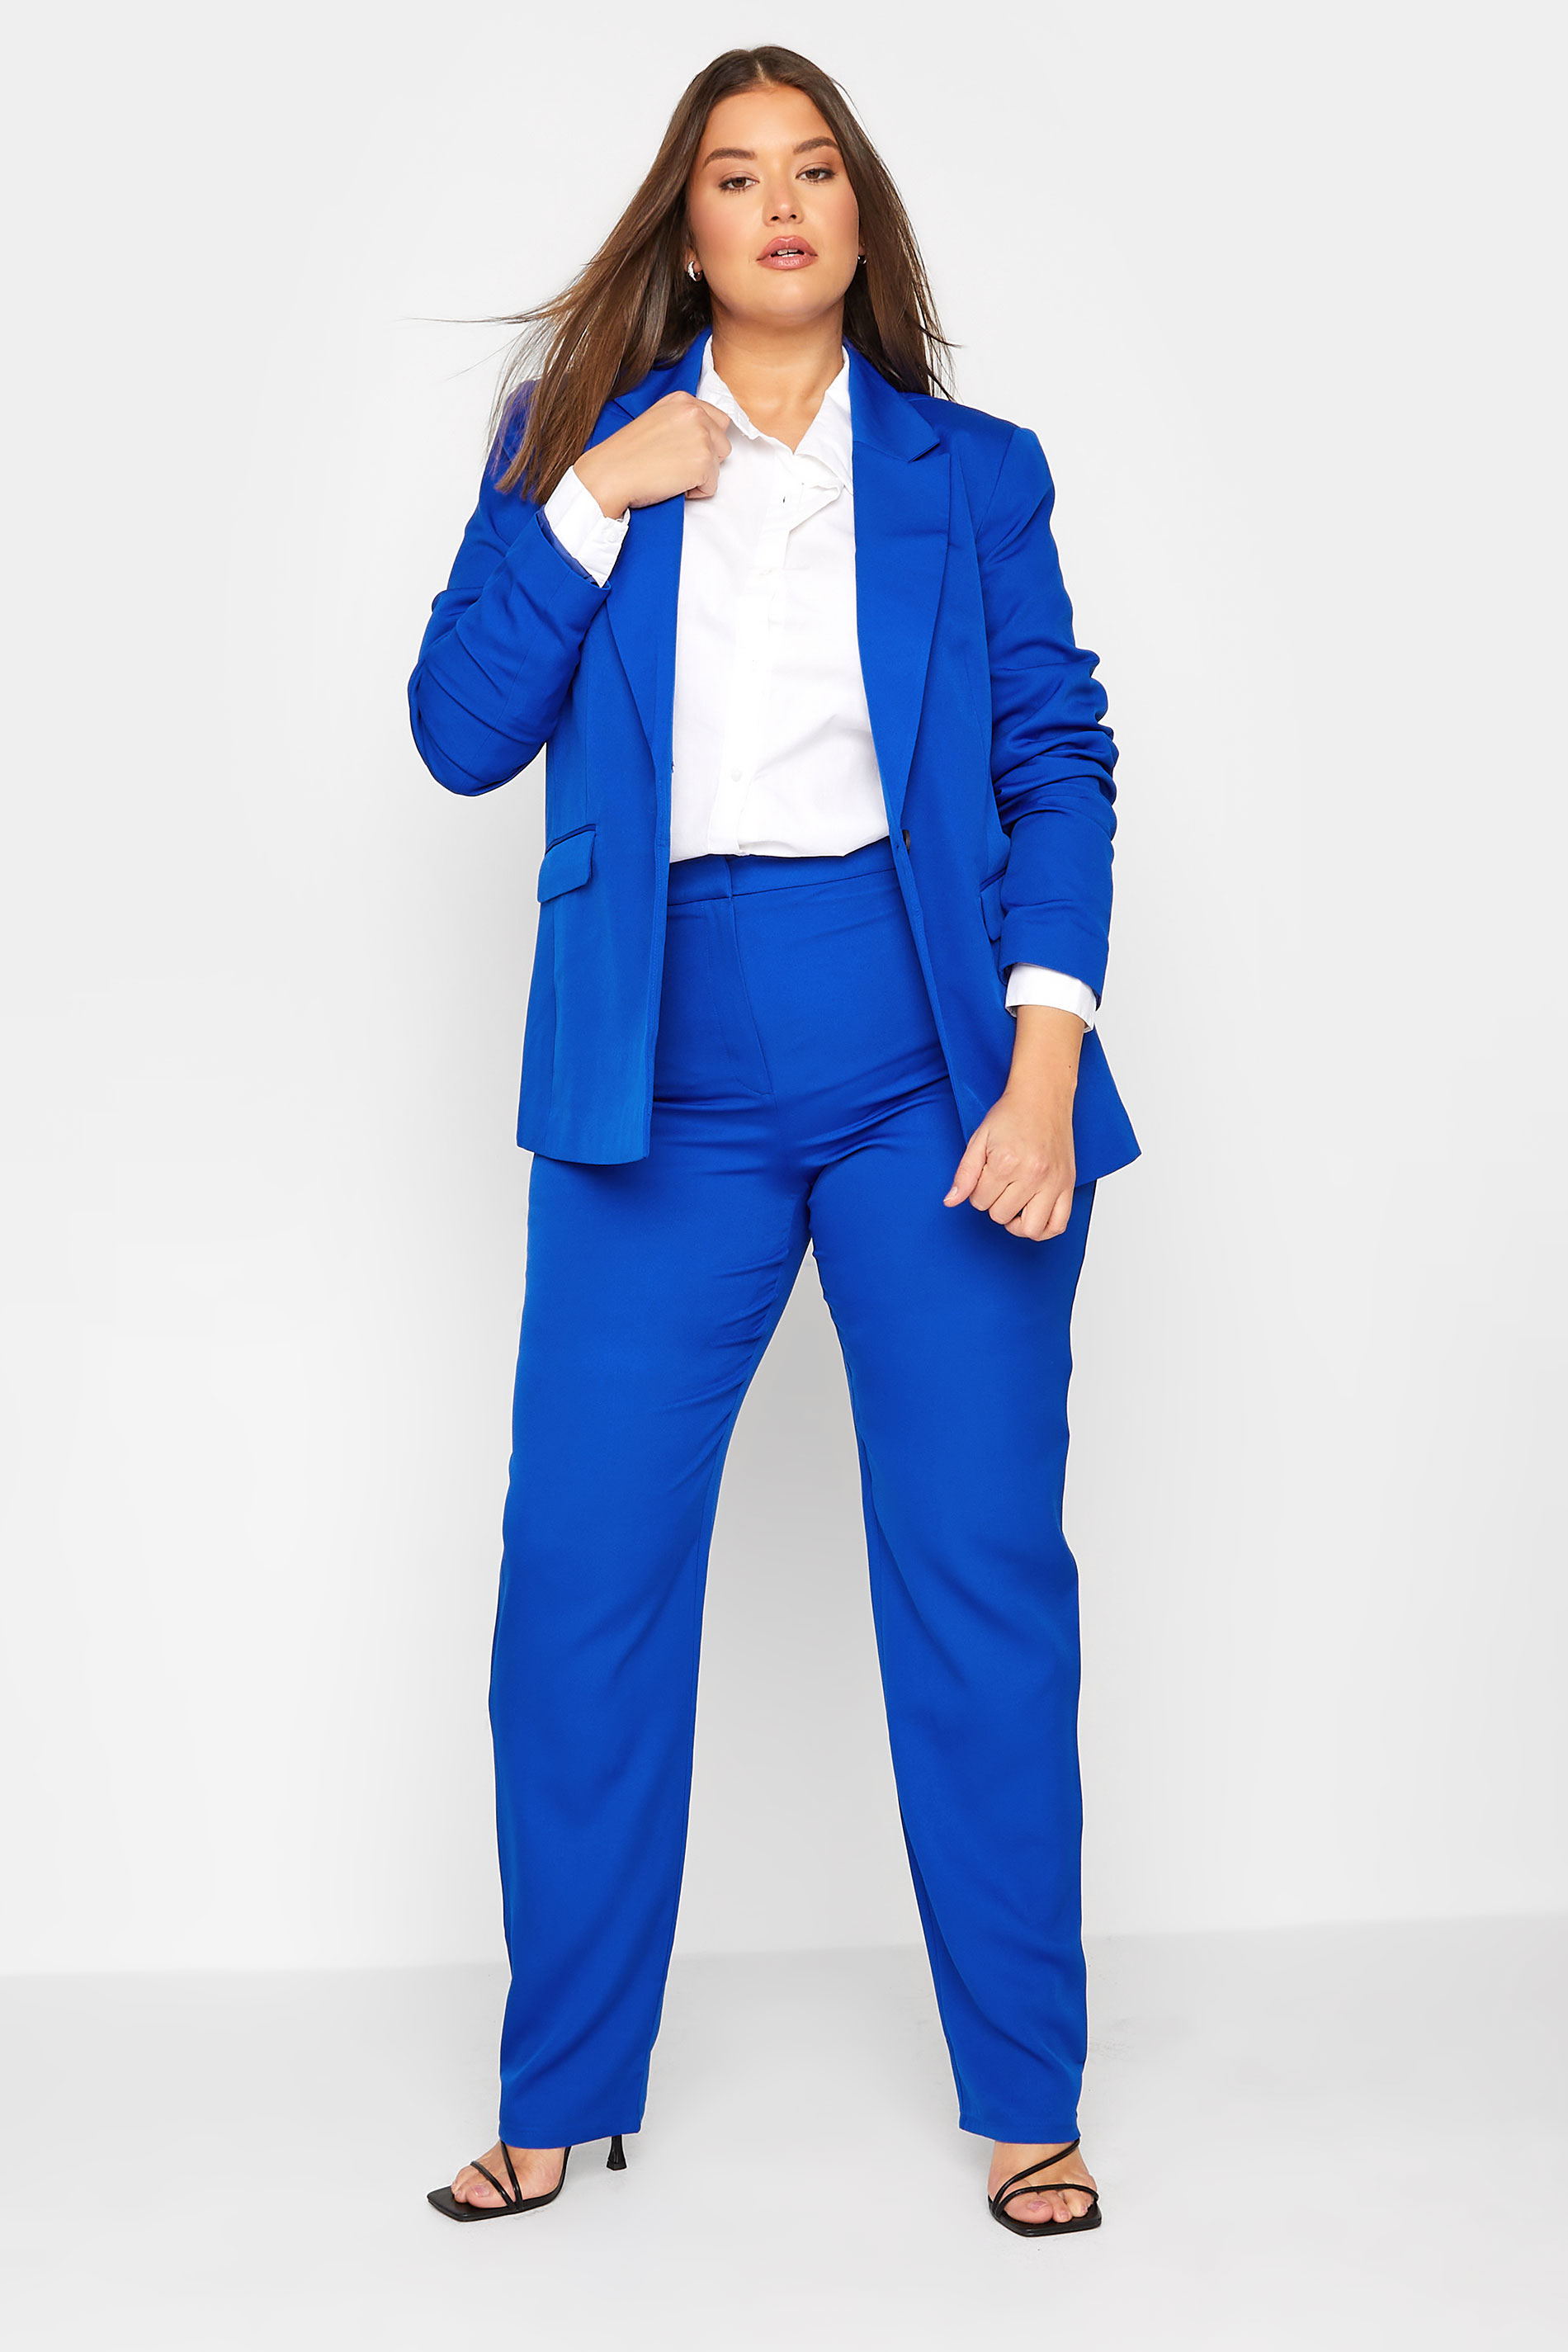 LTS Tall Women's Cobalt Blue Scuba Crepe Blazer | Long Tall Sally 2